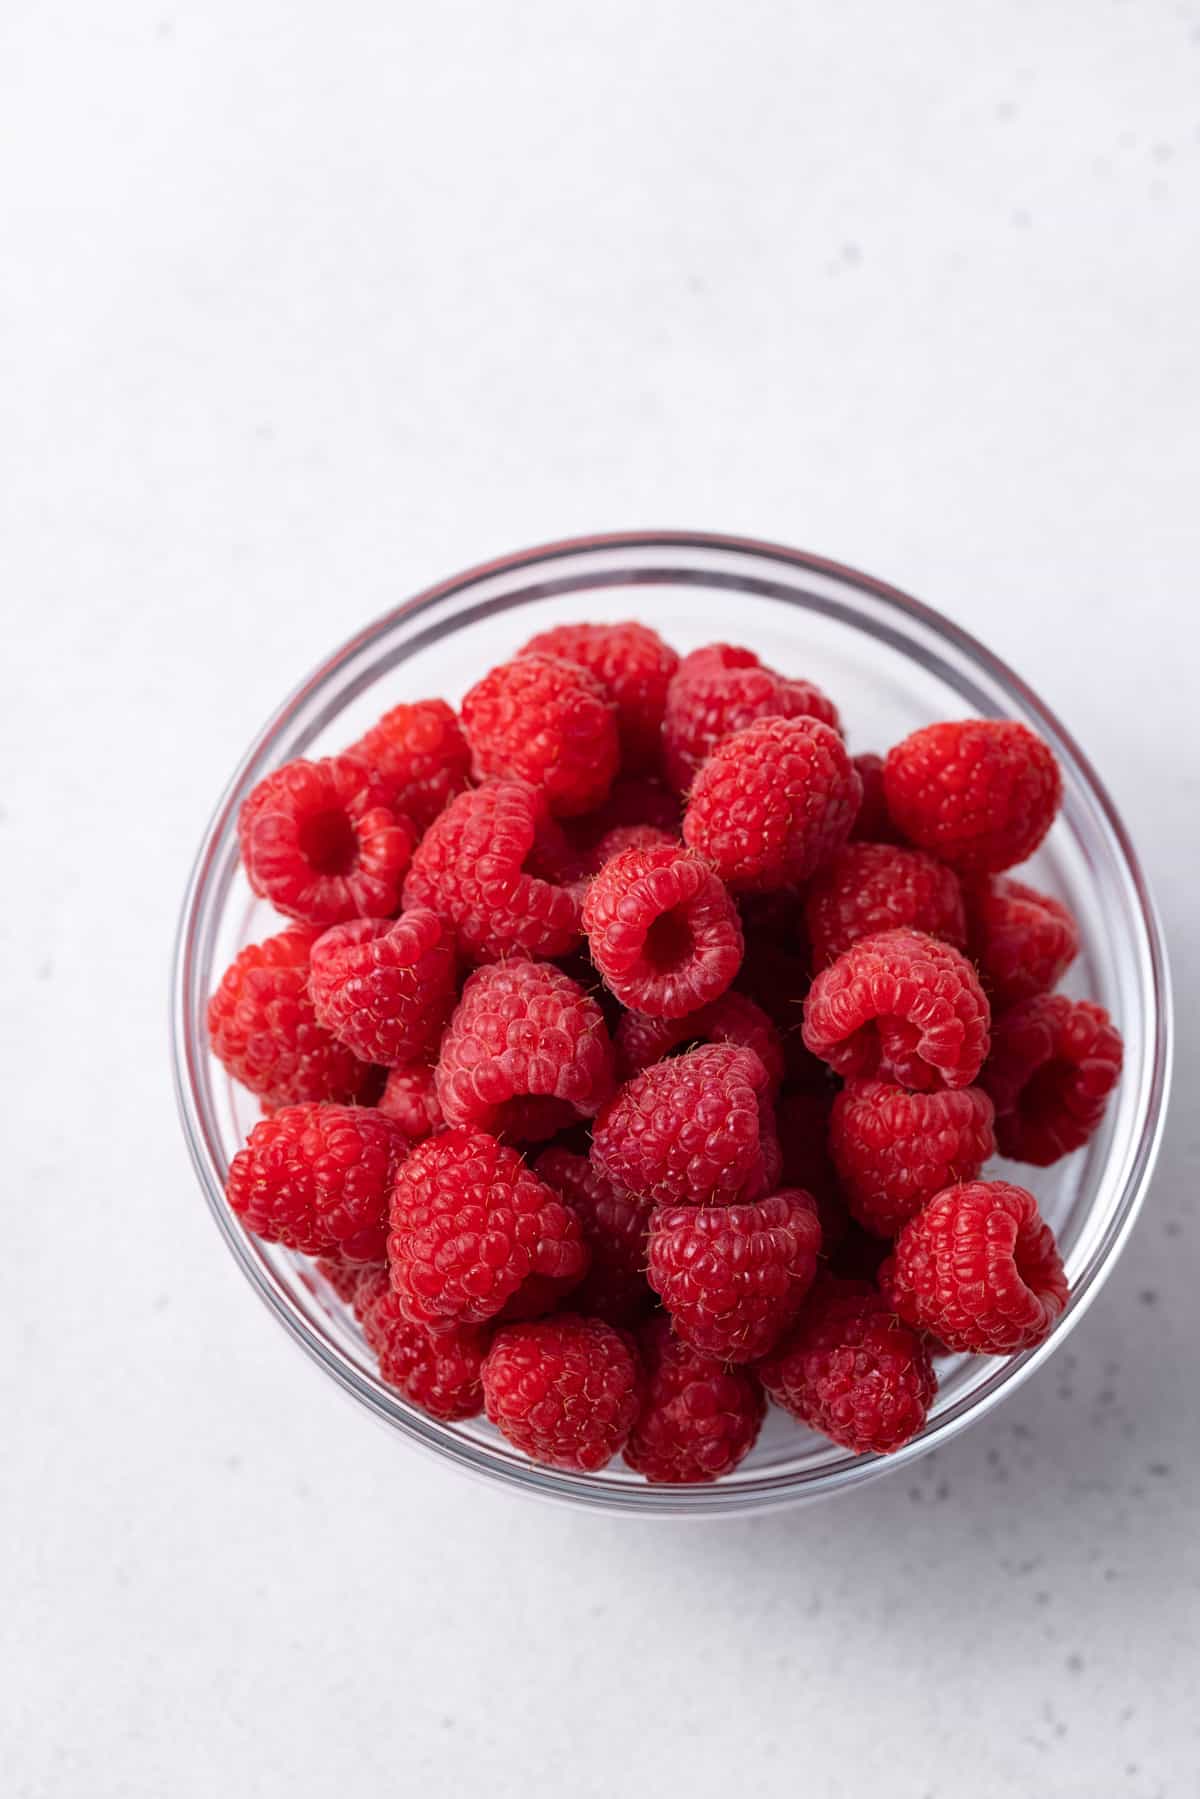 A glass bowl of fresh raspberries